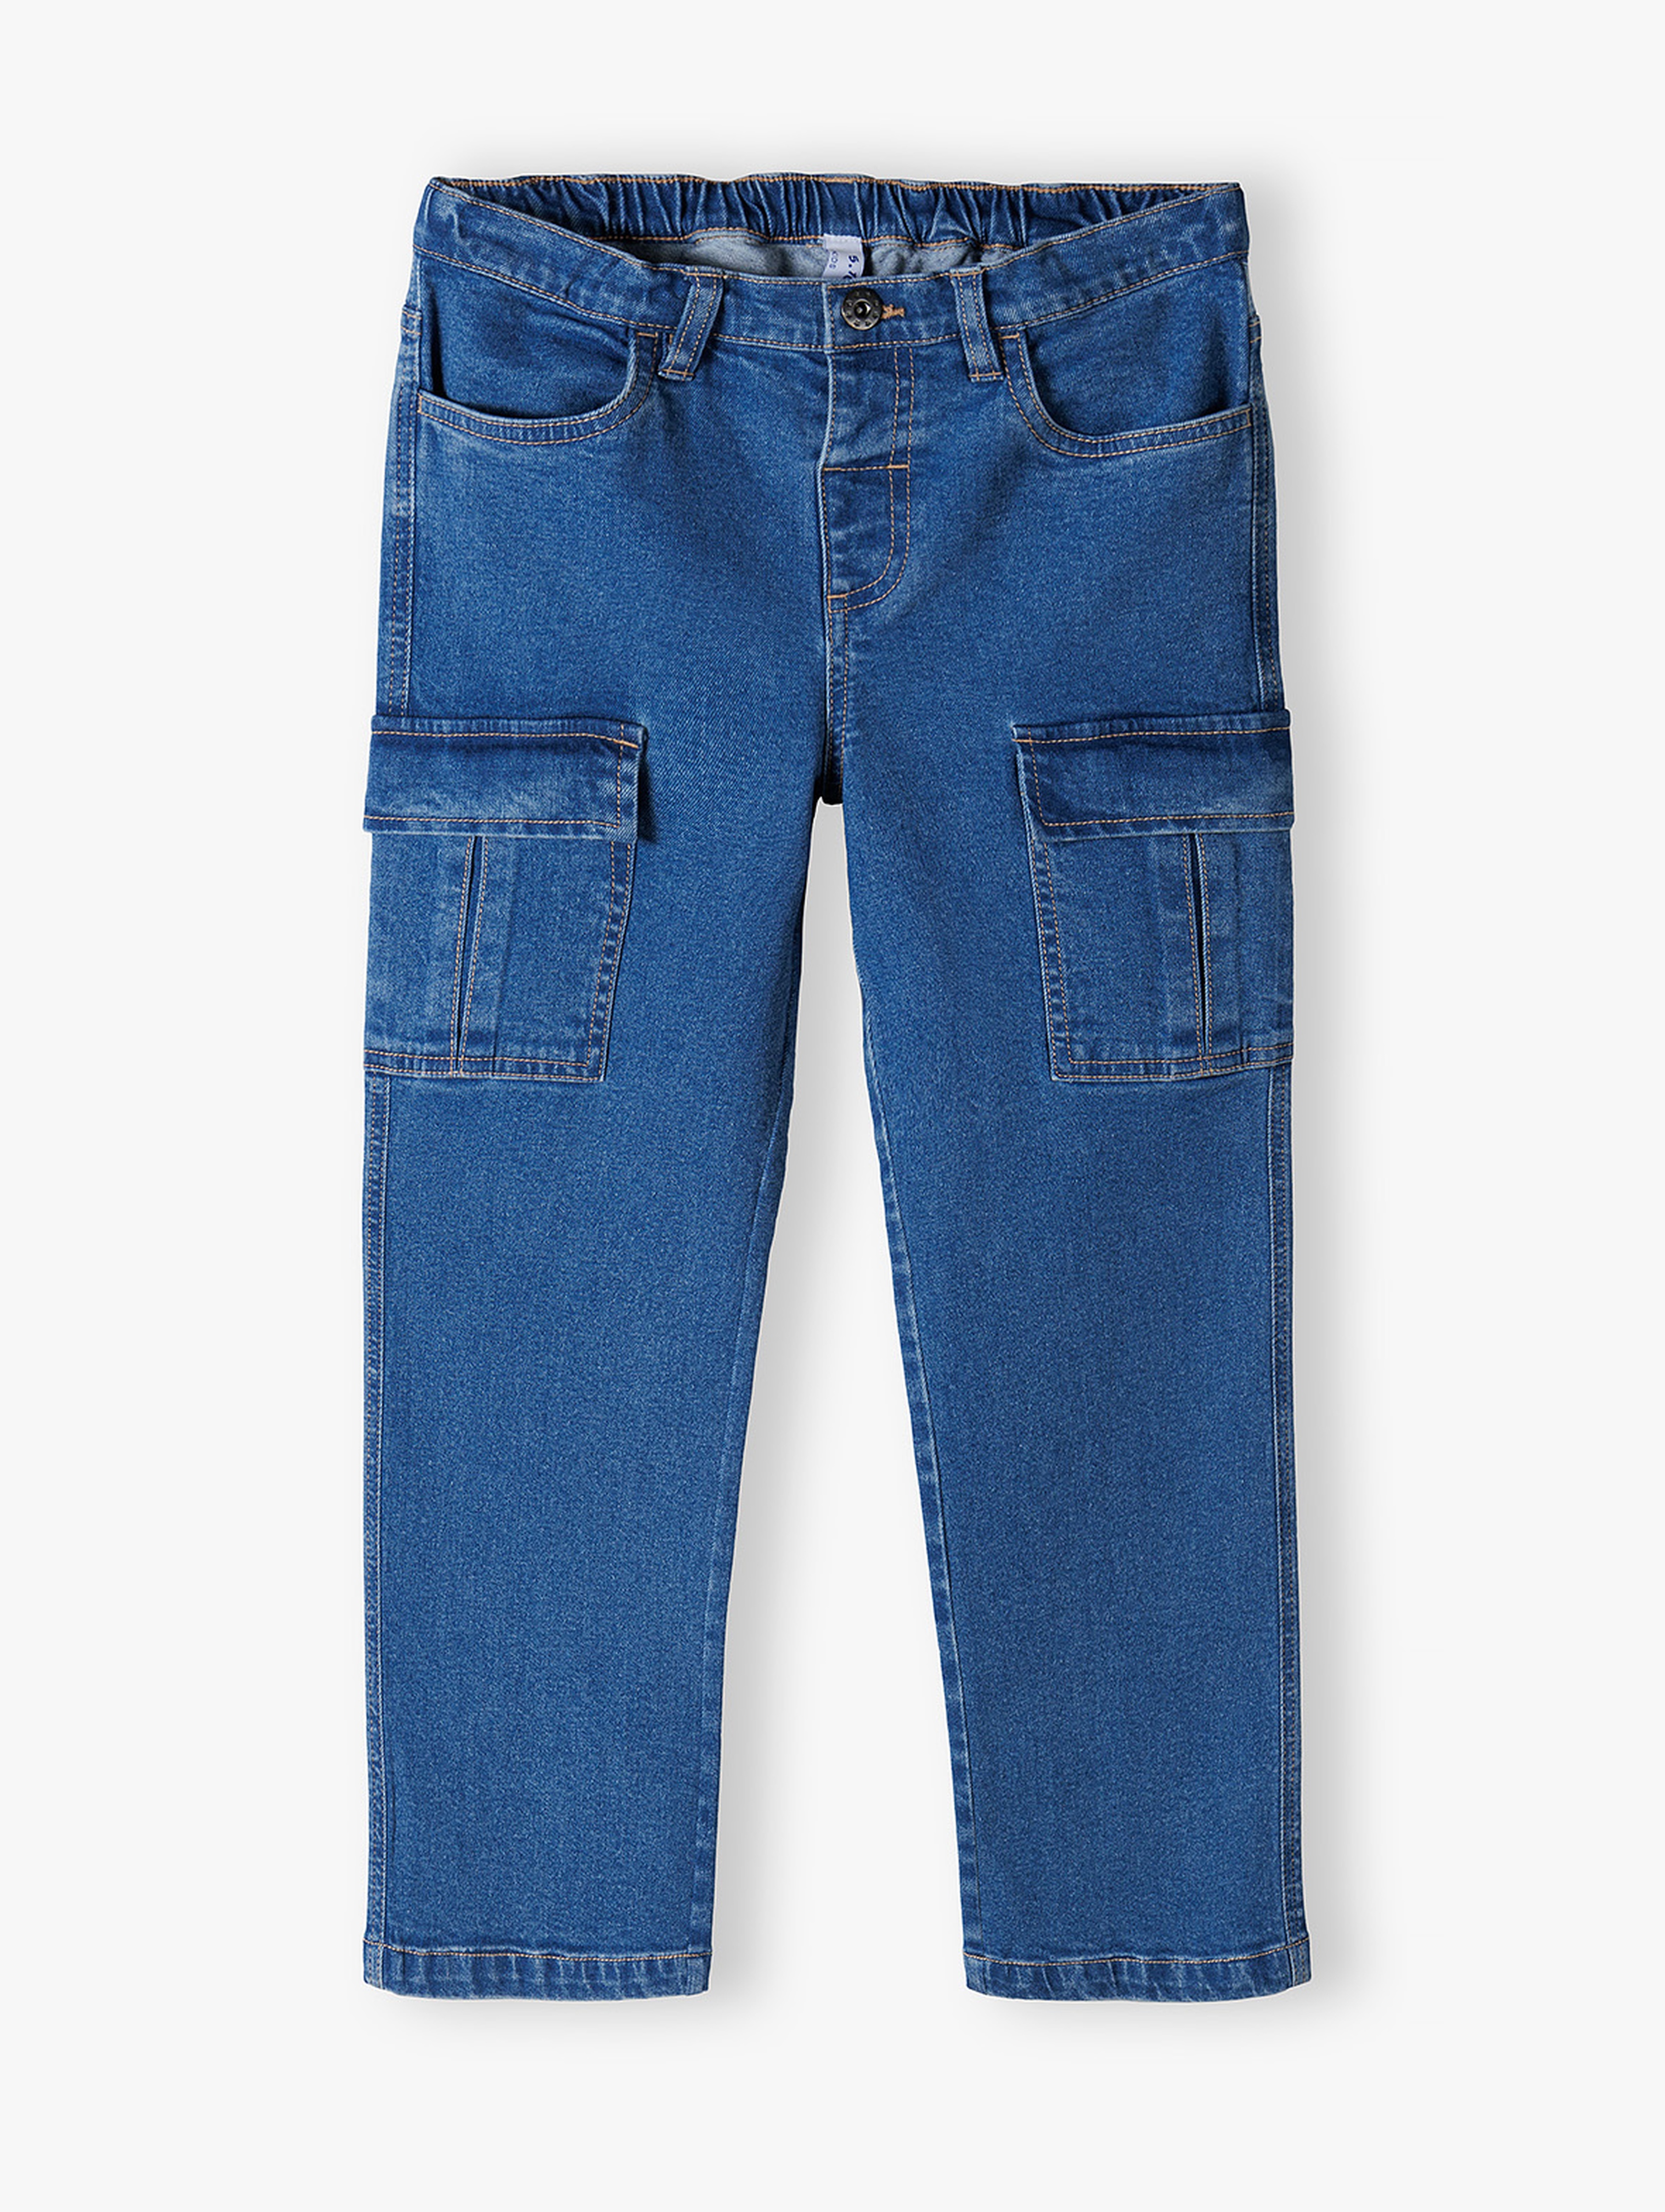 Szerokie jeansowe spodnie dziewczęce typu cargo - 5.10.15.